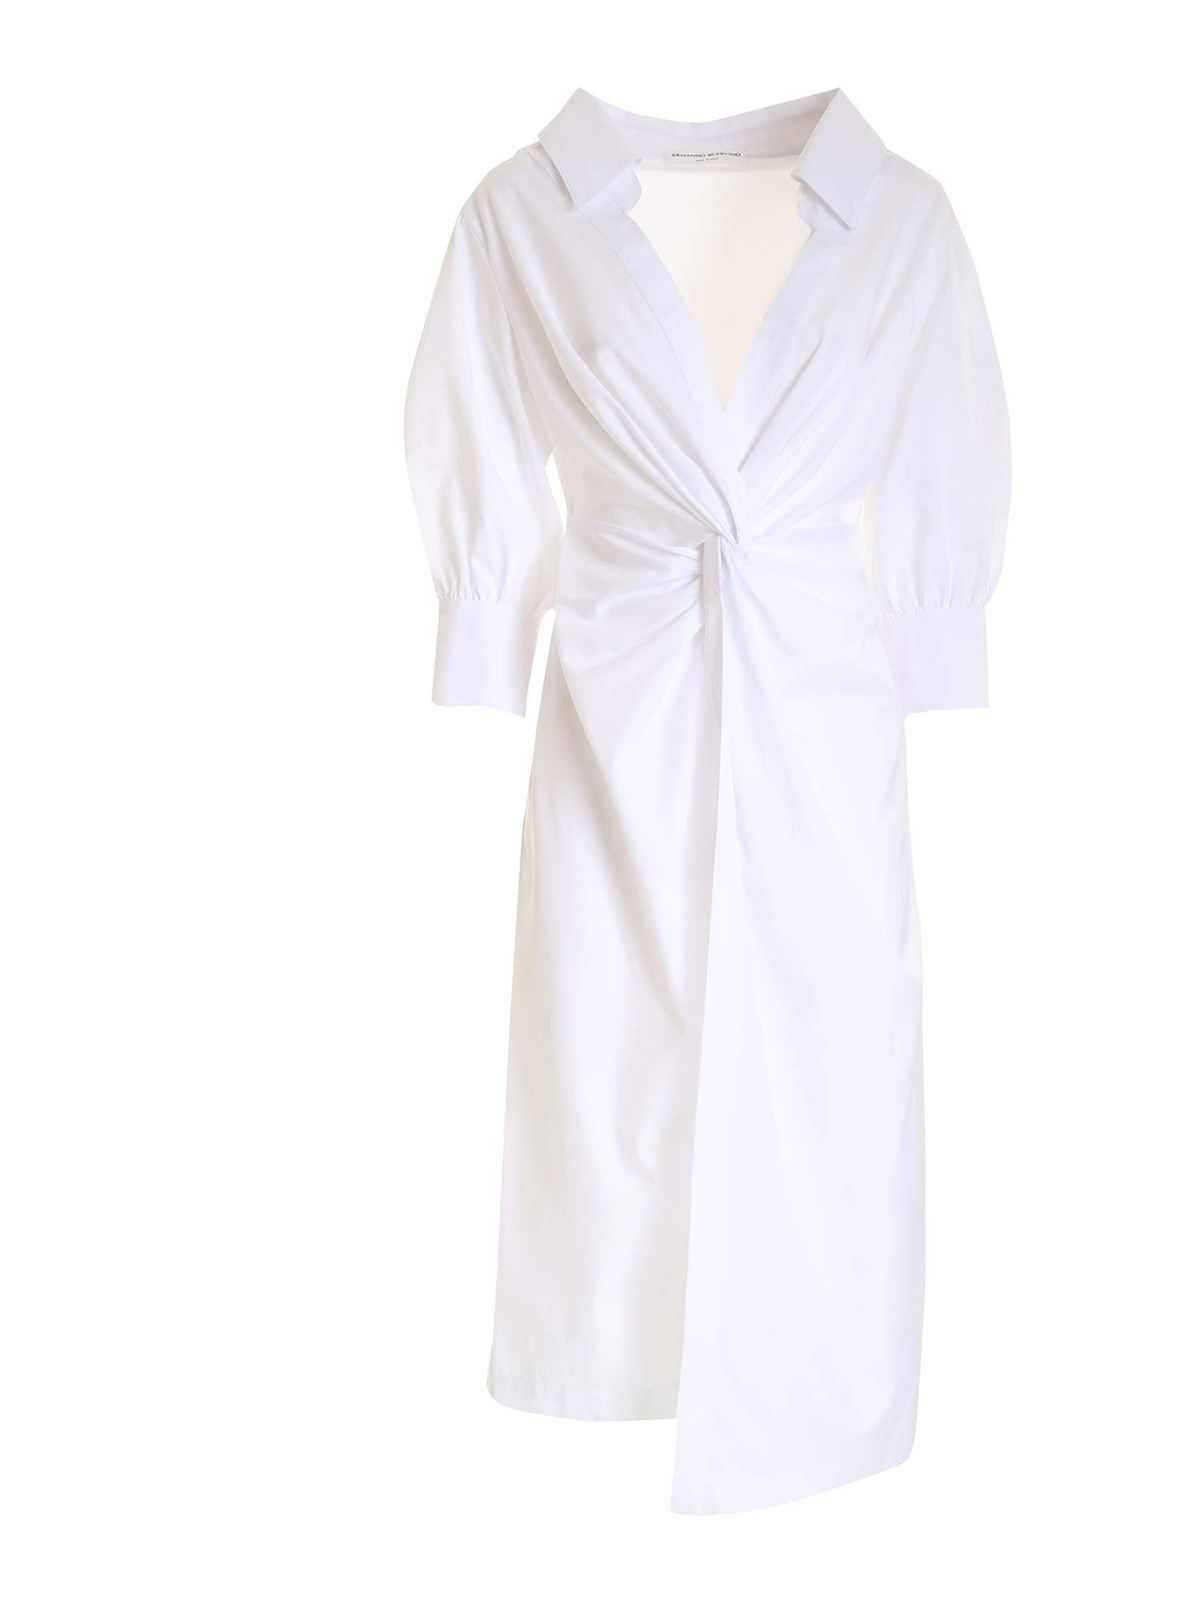 ERMANNO SCERVINO COLLAR DRESS IN WHITE